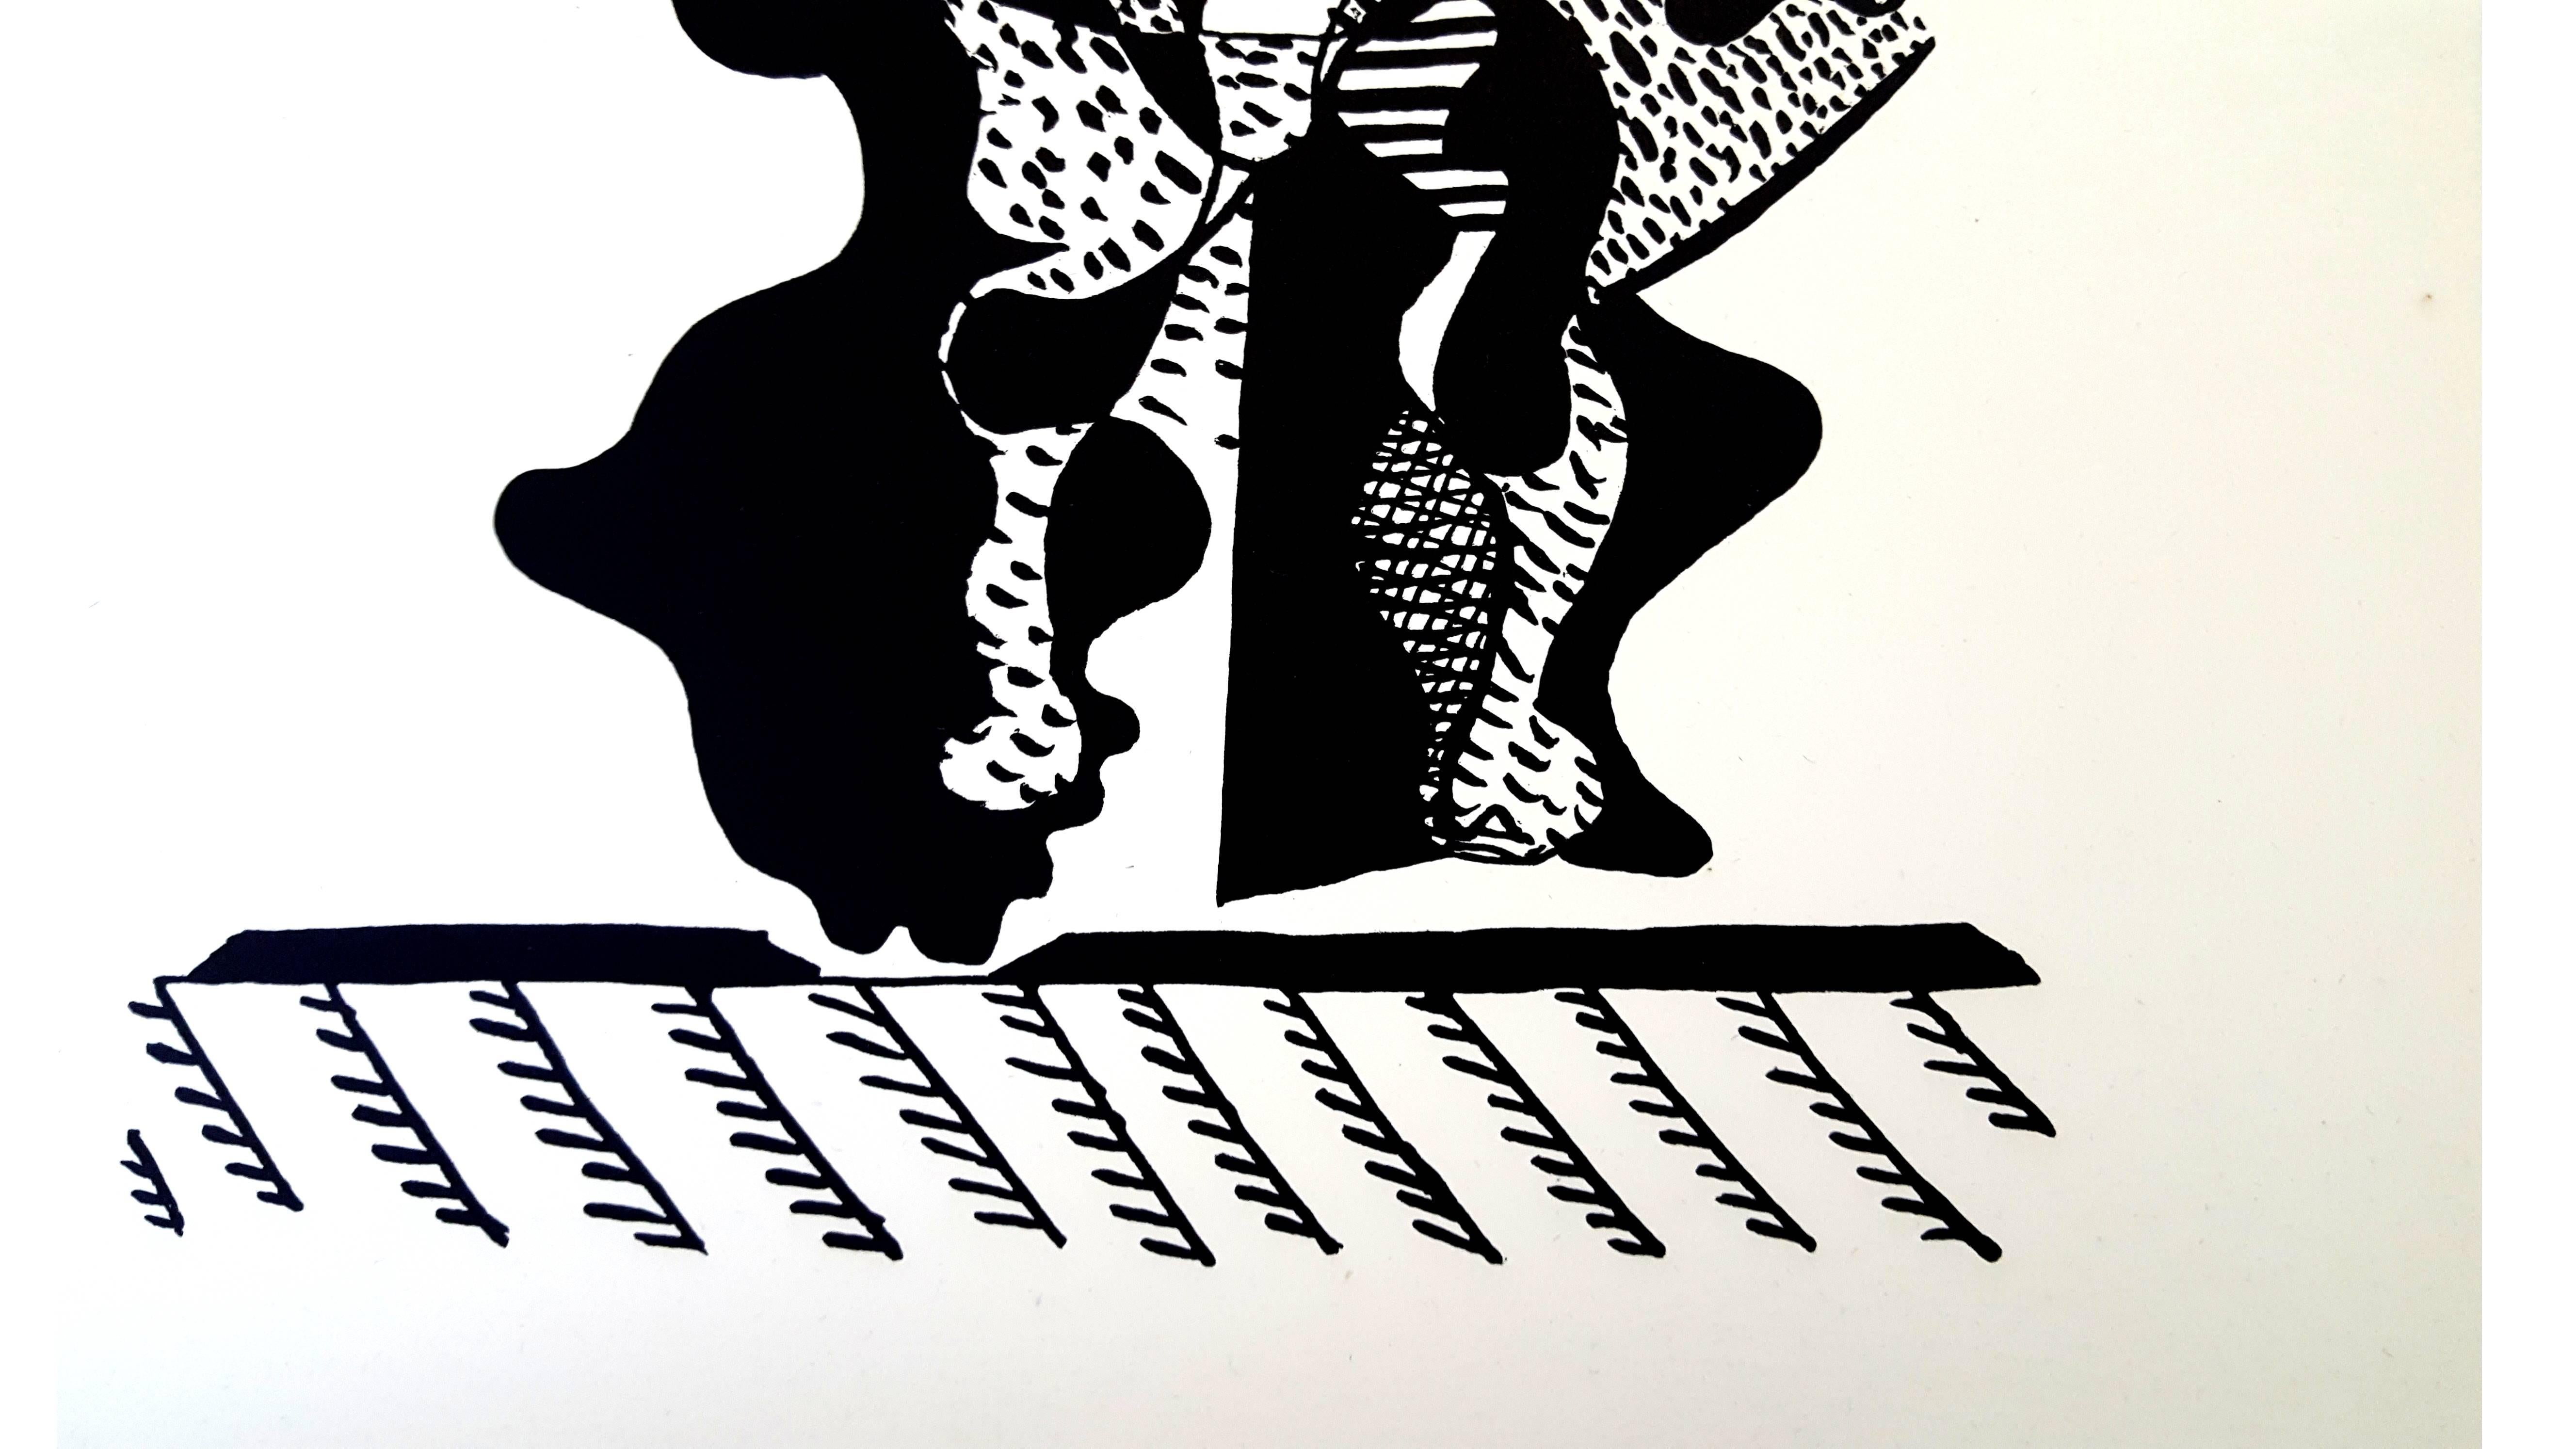 Pablo Picasso (nach) 
Helene Chez Archimede

Medium: Gravur auf Holz von Georges Aubert
Abmessungen: 44 x 33 cm
Mappe: Helen Chez Archimede
Jahr: 1955
Auflage: 240 (Hier handelt es sich um eines der 140 Exemplare, die für die Mitglieder des Neuen